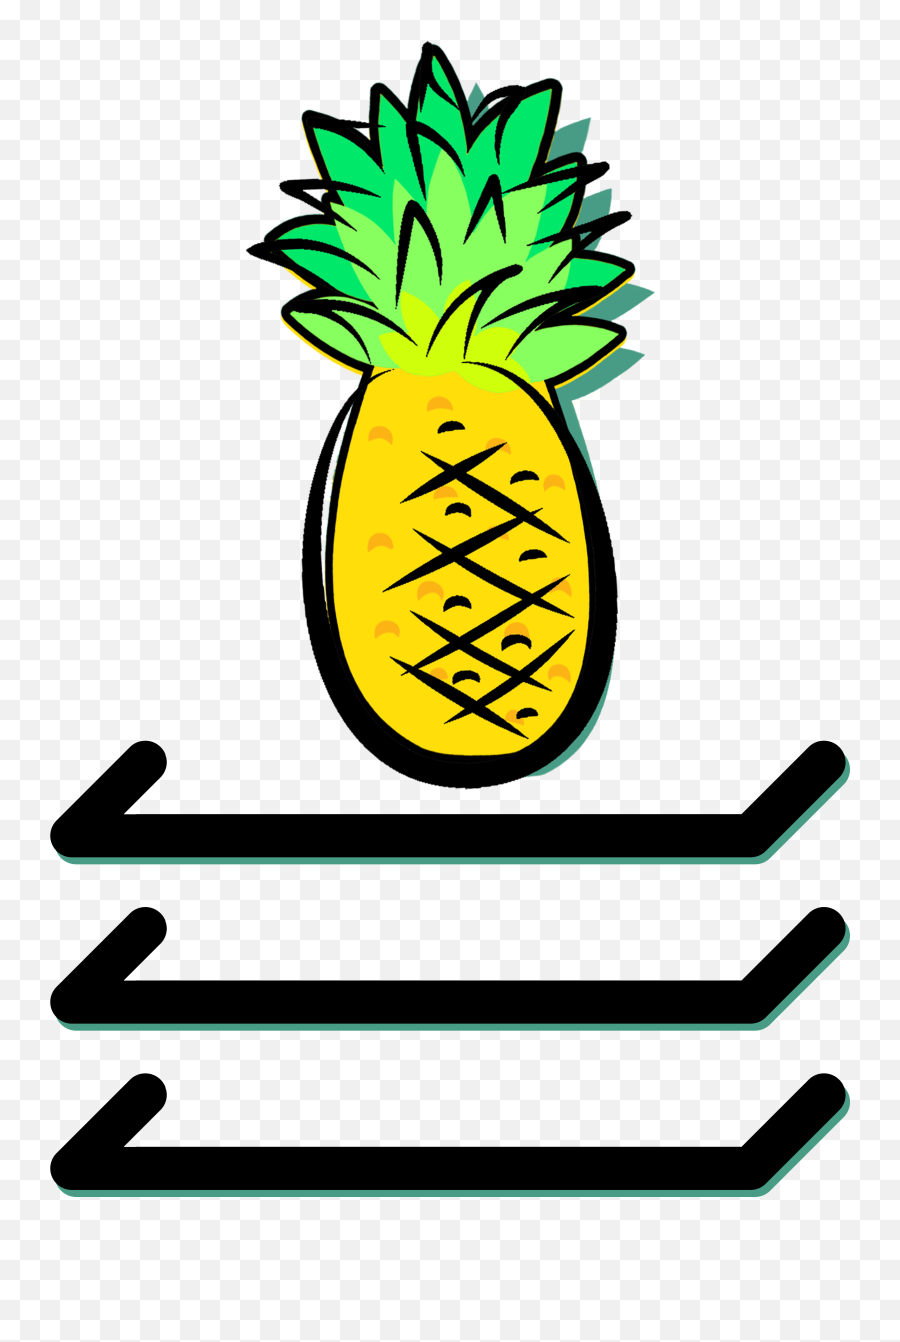 Top Shelf Pineapple - Pineapple Clipart Full Size Clipart Fresh Emoji,Pineapple Clipart